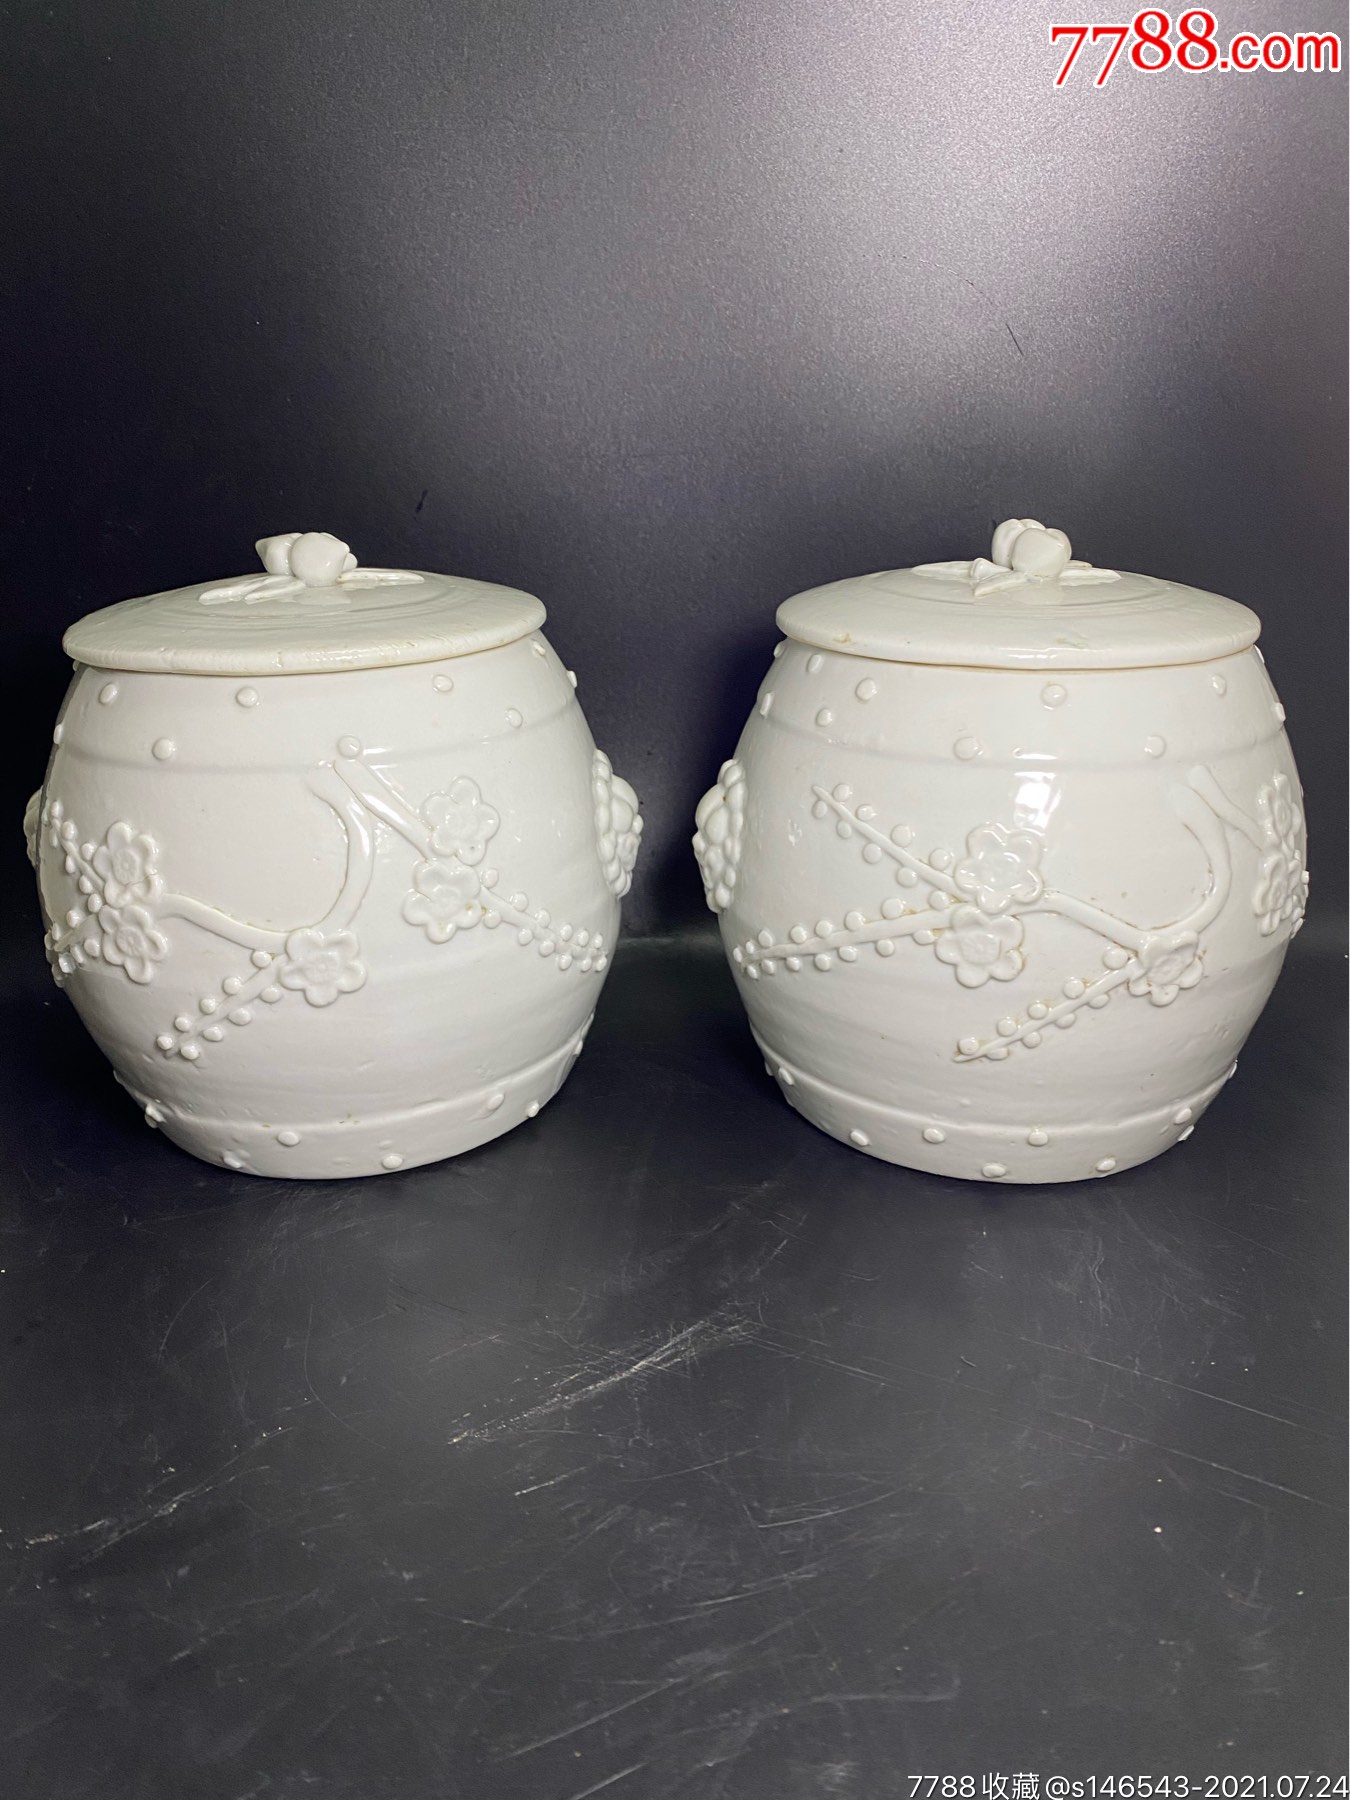 清代德化白瓷茶叶罐,釉水漂亮,器型规整,狮头精美,全品尺寸15×16